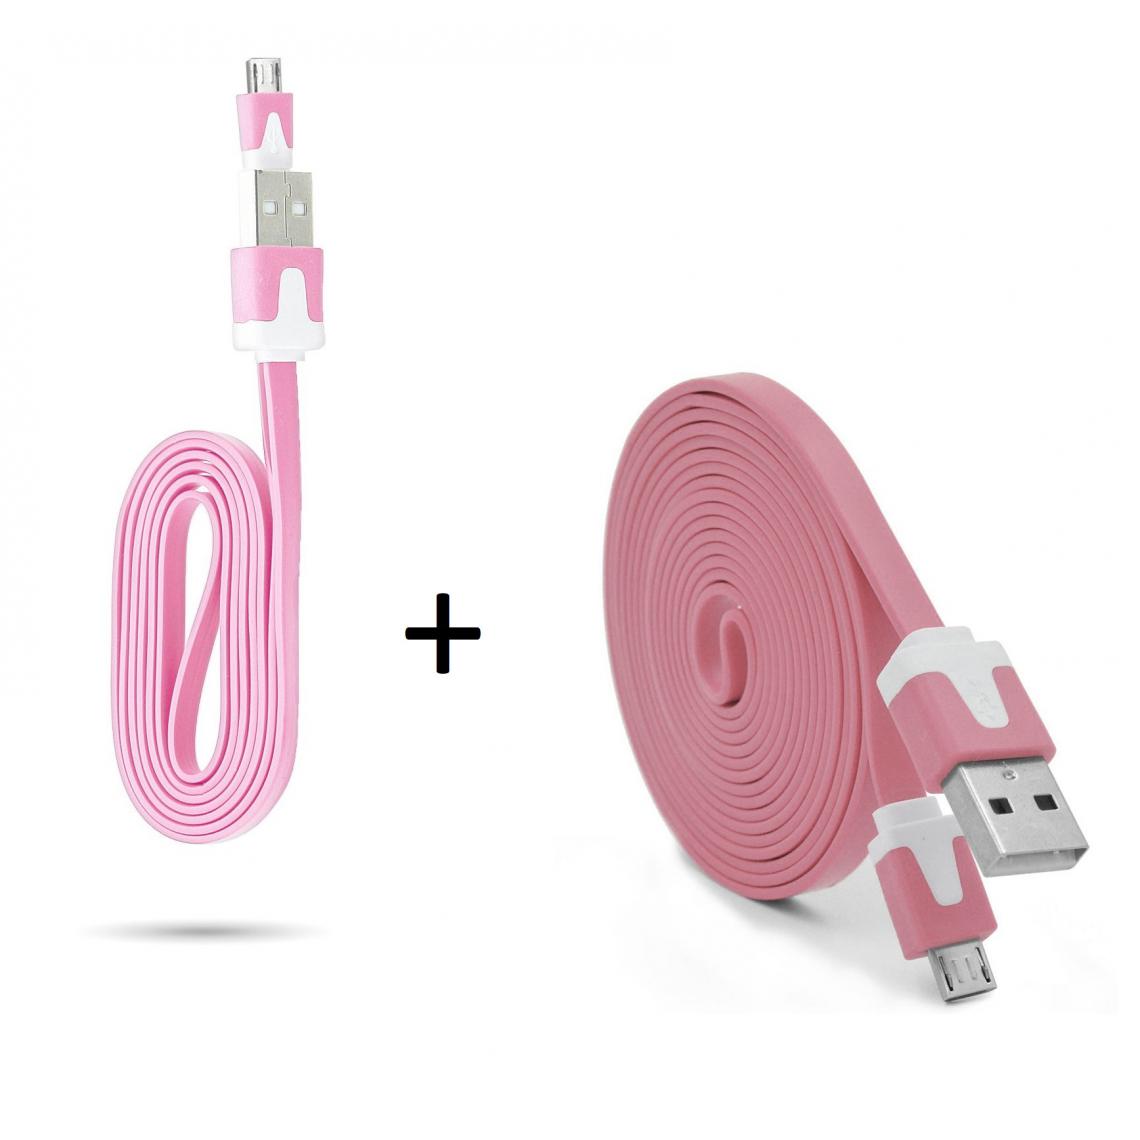 Shot - Pack Chargeur pour WIKO View 2 Plus Smartphone Micro USB (Cable Noodle 3m + Cable Noodle 1m) Android (ROSE) - Chargeur secteur téléphone